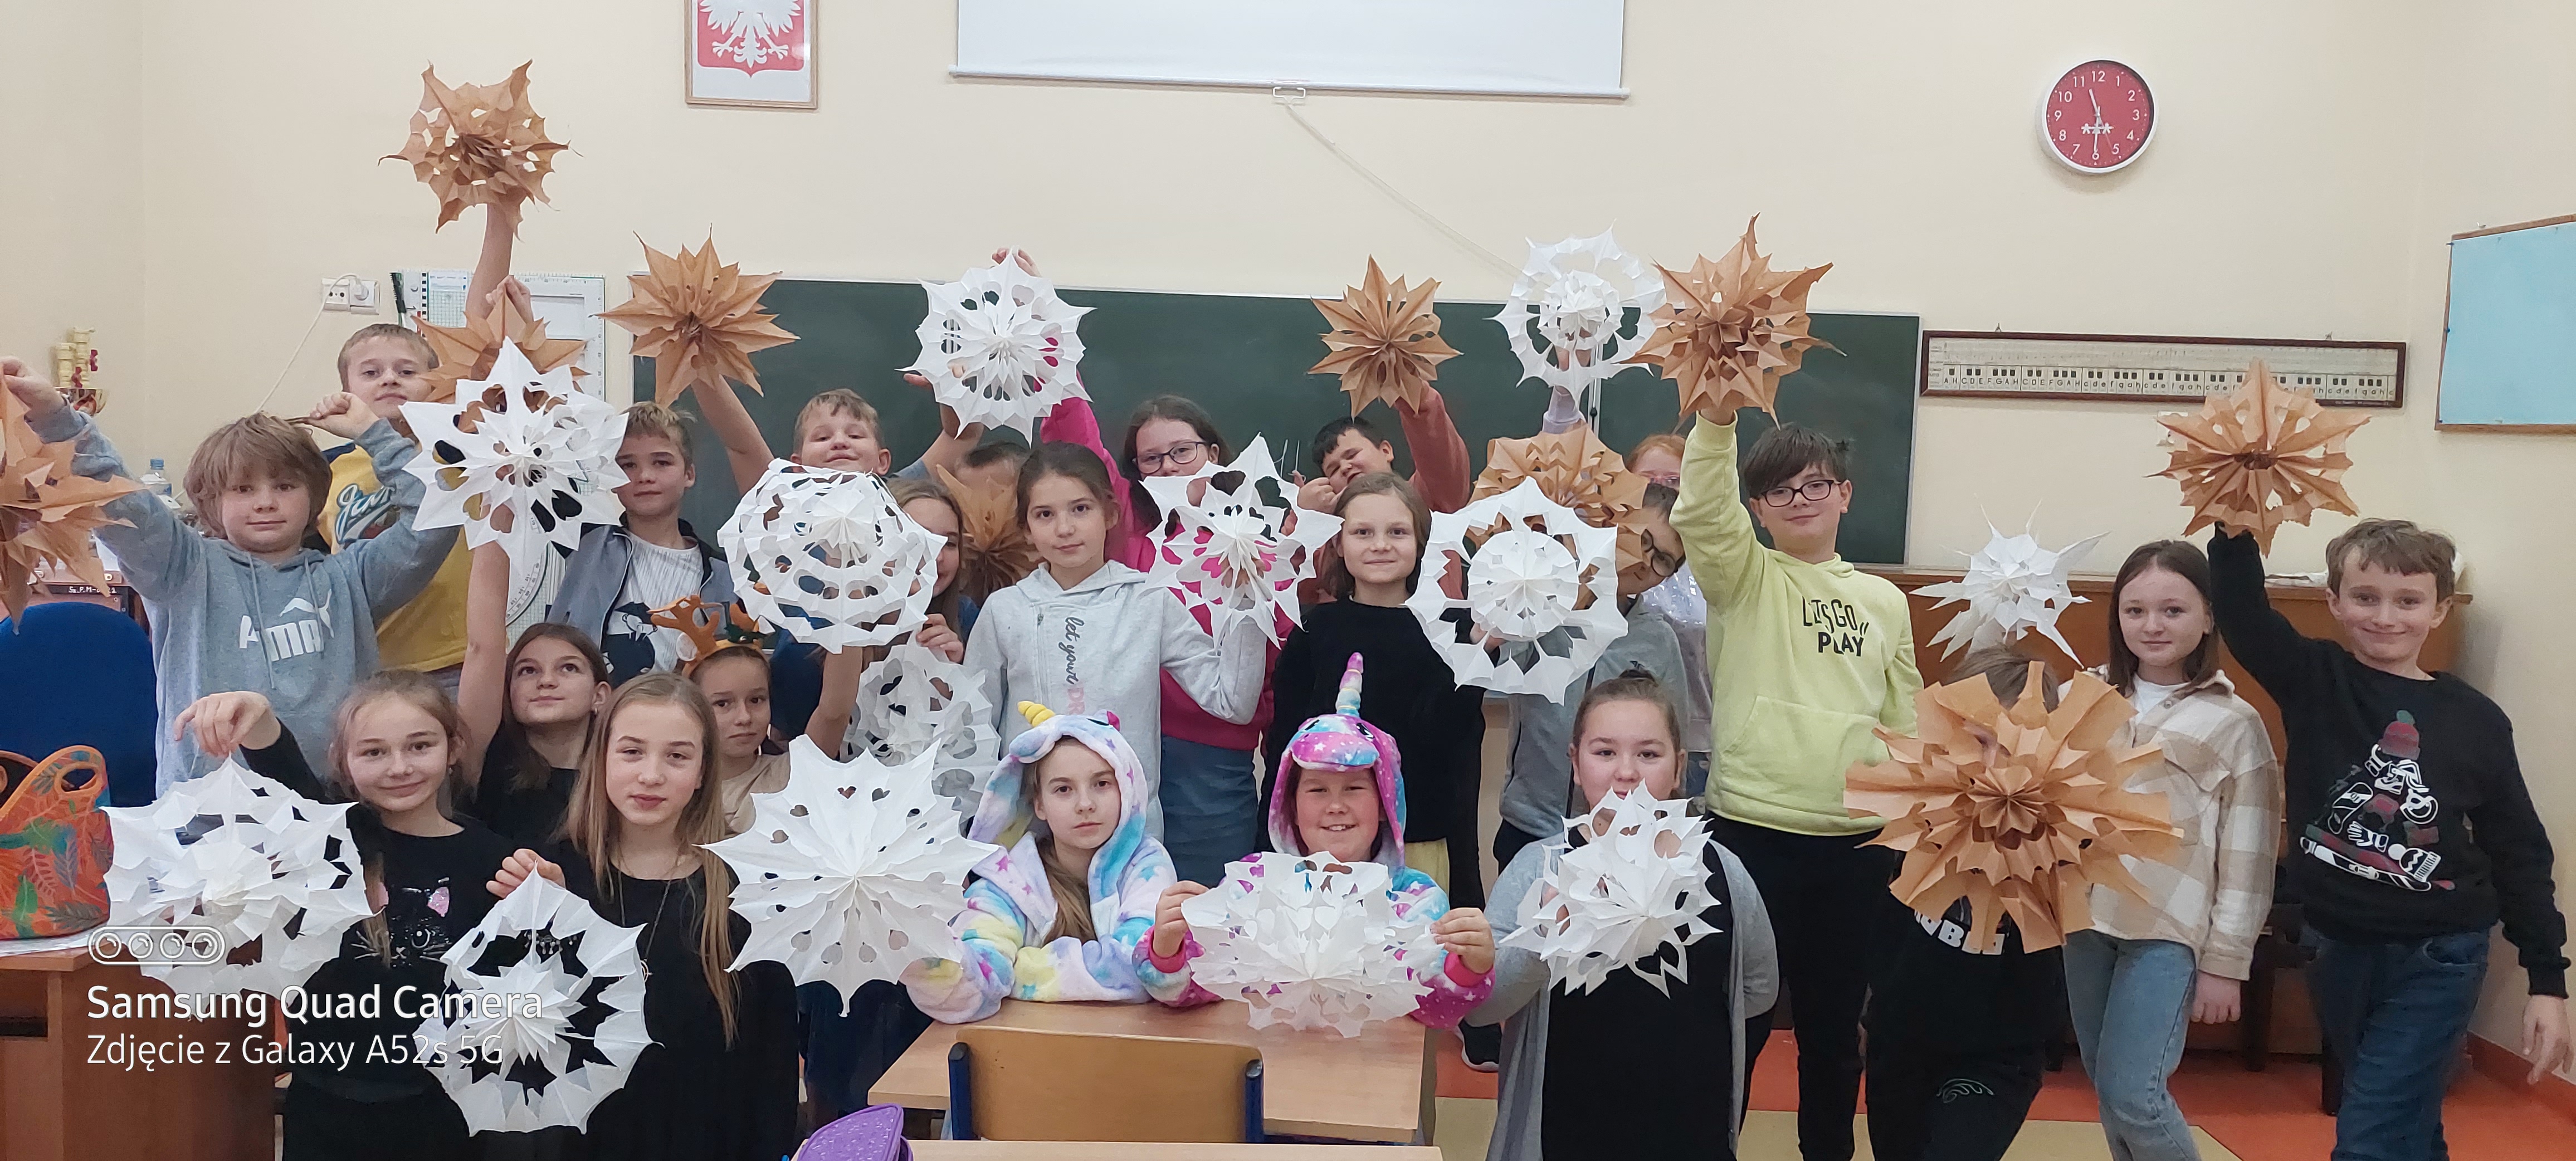 Zdjęcie grupowe uczniów klasy 4b trzymających swoje papierowe gwiazdy.